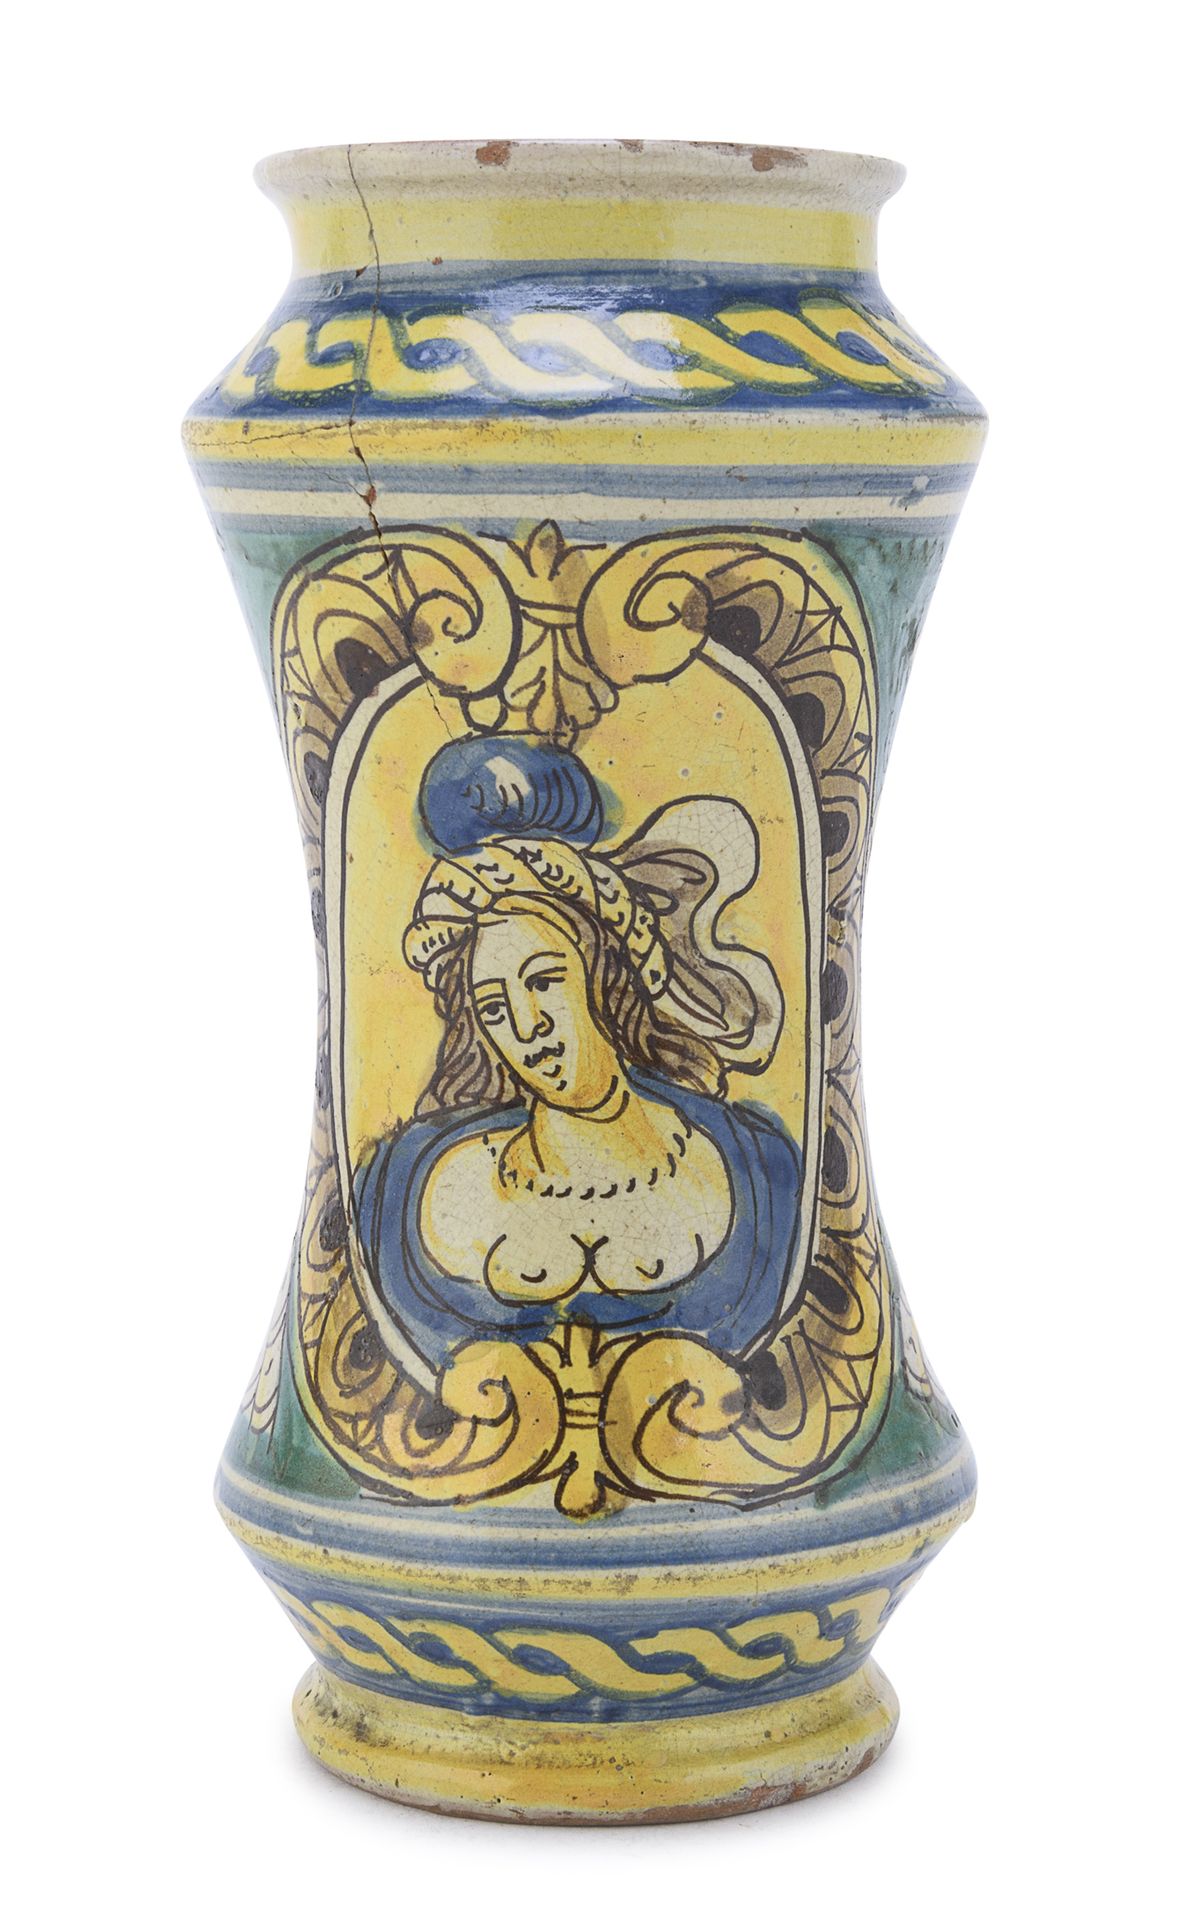 Null 马约里卡-阿尔巴雷洛，可能是西西里岛 十八世纪

多色的，身体上的装饰是女性半身的纹章和带卷轴的凯旋图。编织的丝带边框。

尺寸为22 x 11厘米。&hellip;